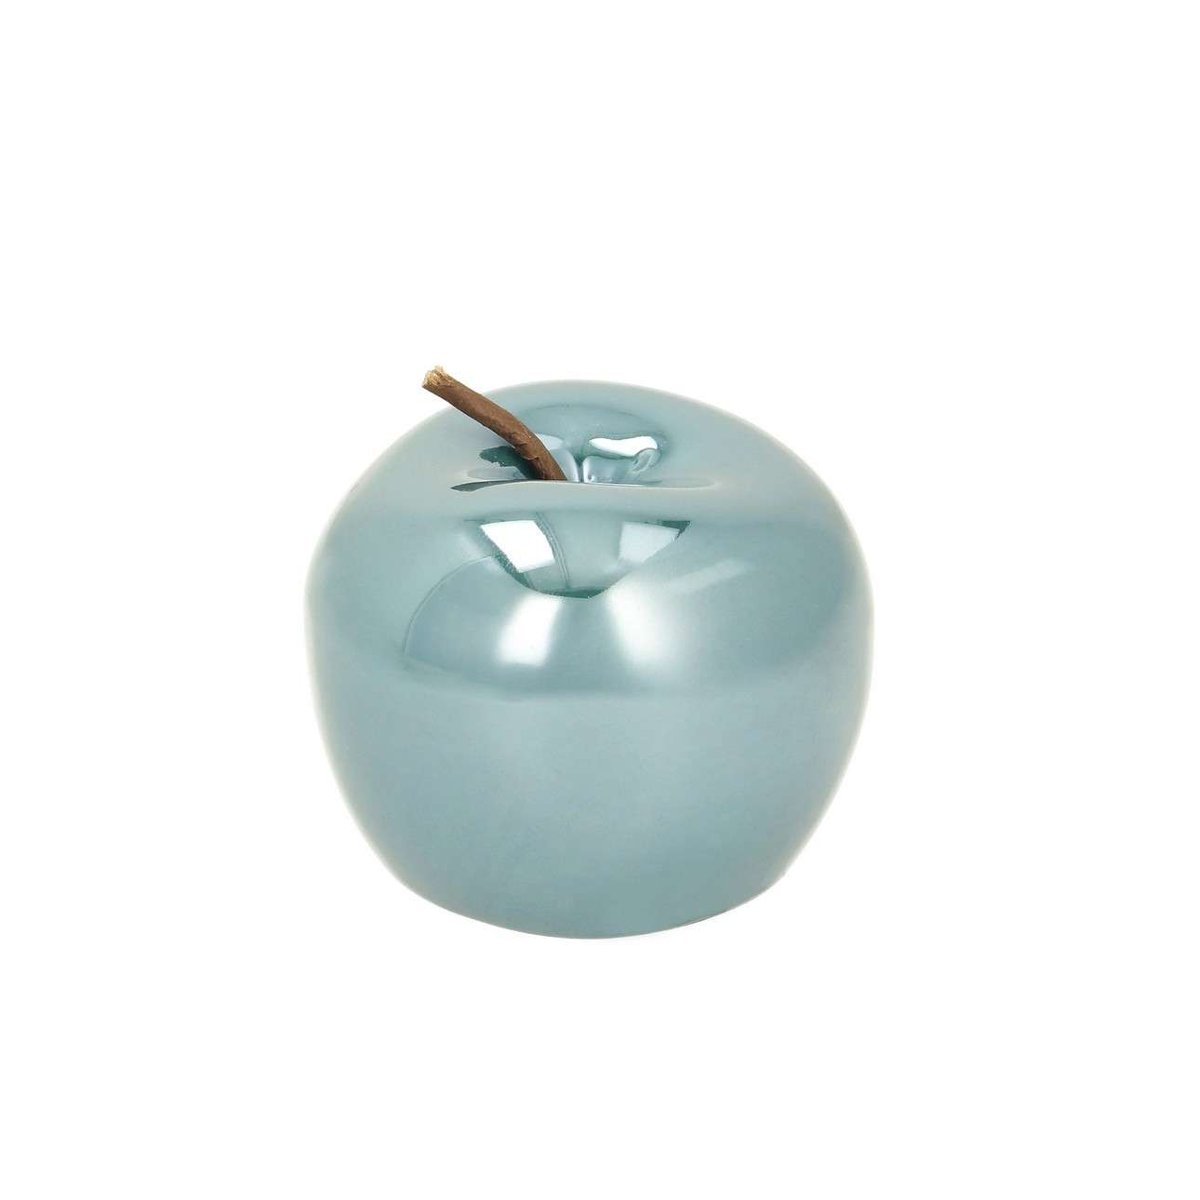 Zdjęcia - Figurka / świecznik Dekoria Dekoracja Apple perly turquoise, 8 x 8 x 6,5 cm 